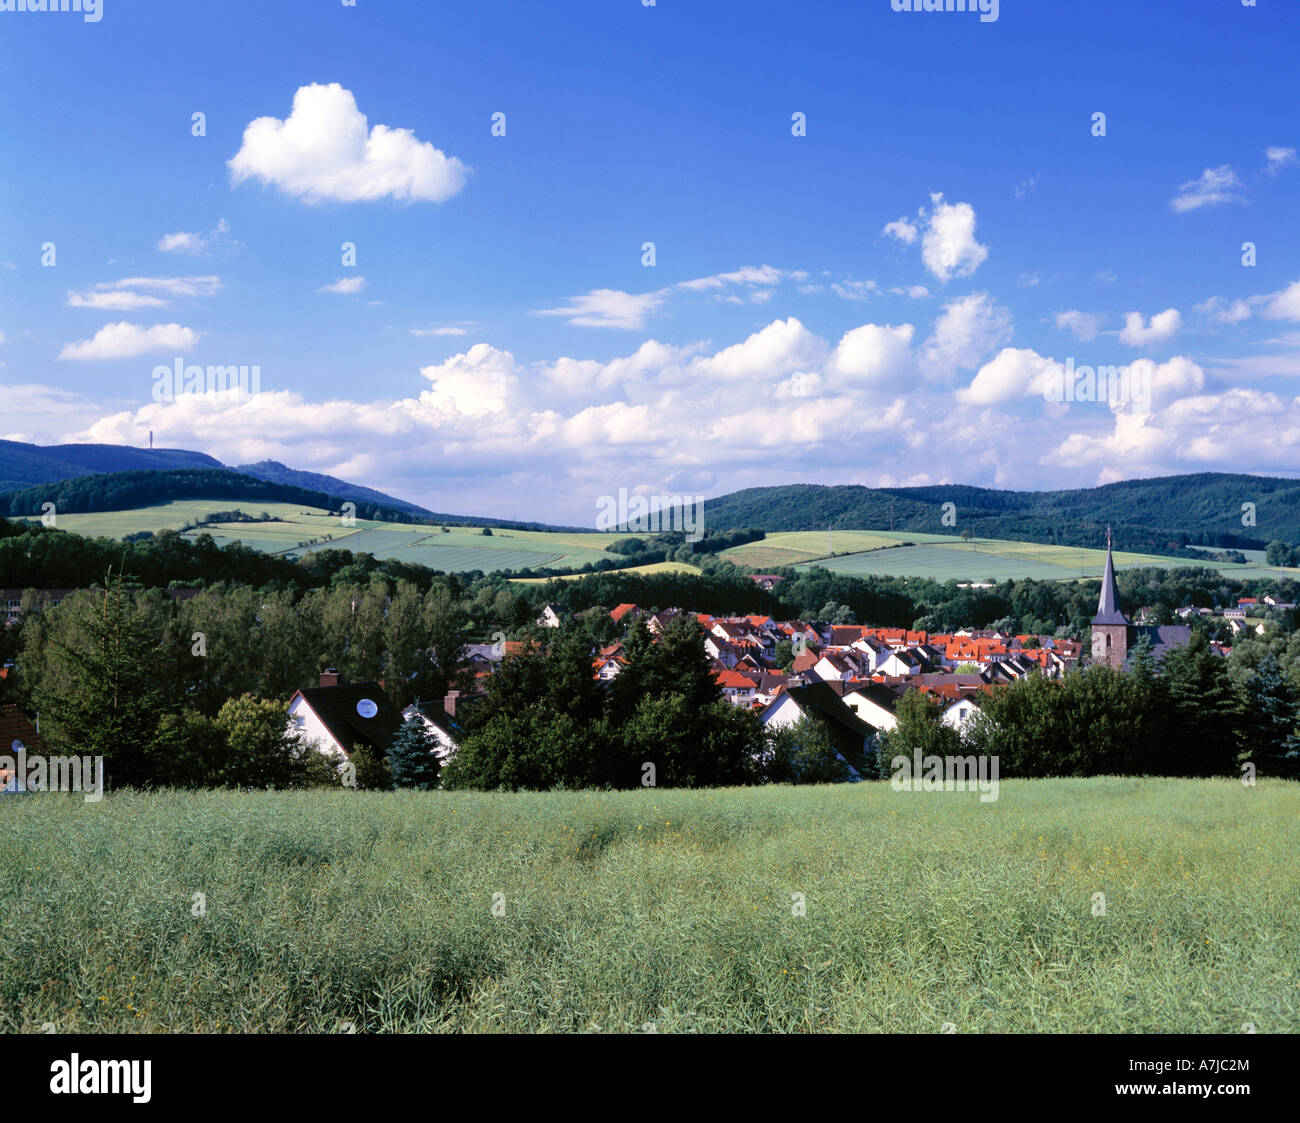 Stadt in Landschaft eingebettet, Stadtpanorama von Waldkappel, Wehre, Hessisches Bergland, Hessen Stock Photo